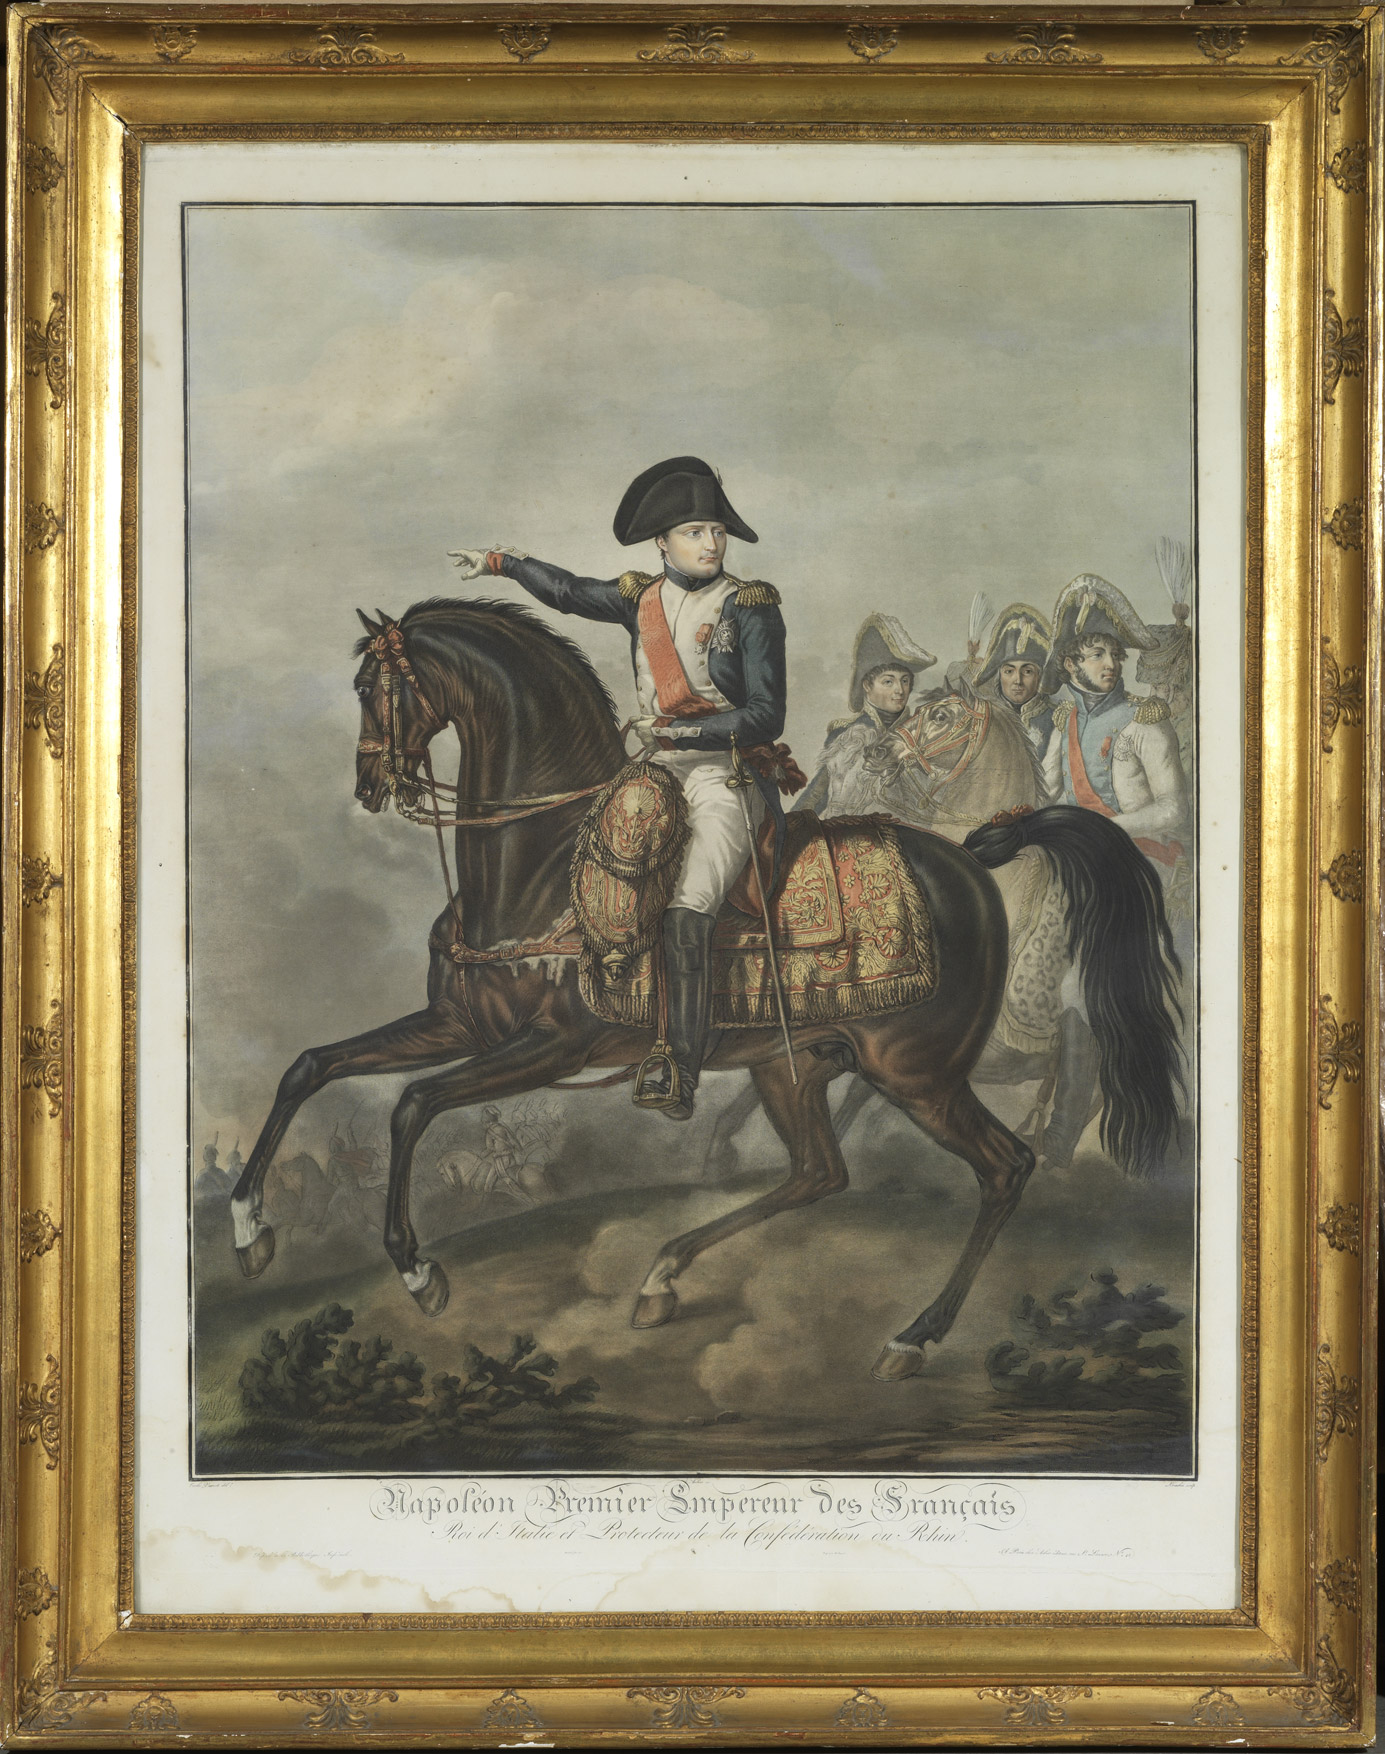 Gravure de Napoléon à cheval d'après Carle Vernet - Patrimoine Charles-André COLONNA WALEWSKI, en ligne directe de Napoléon